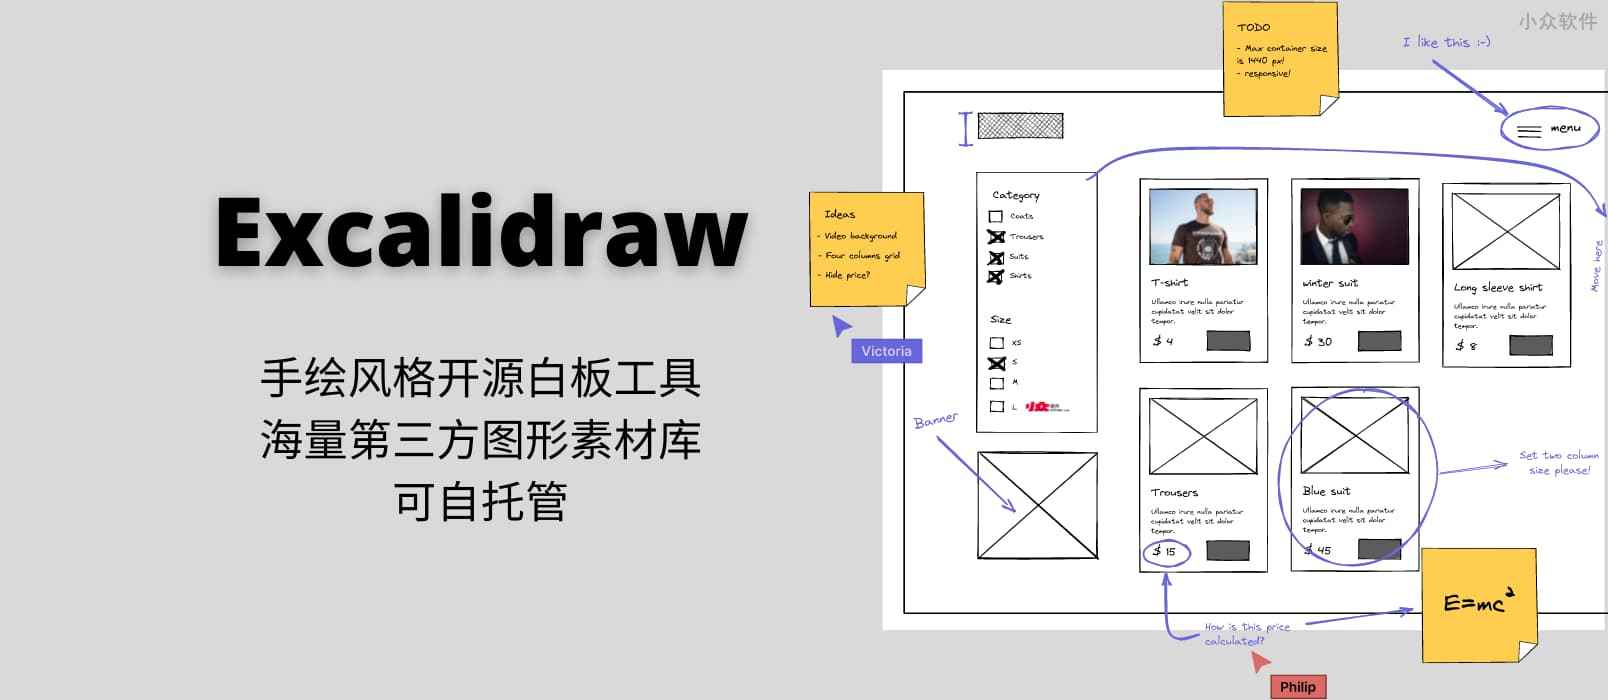 Excalidraw – 手绘风格的开源白板工具，海量第三方图形素材库，可自托管